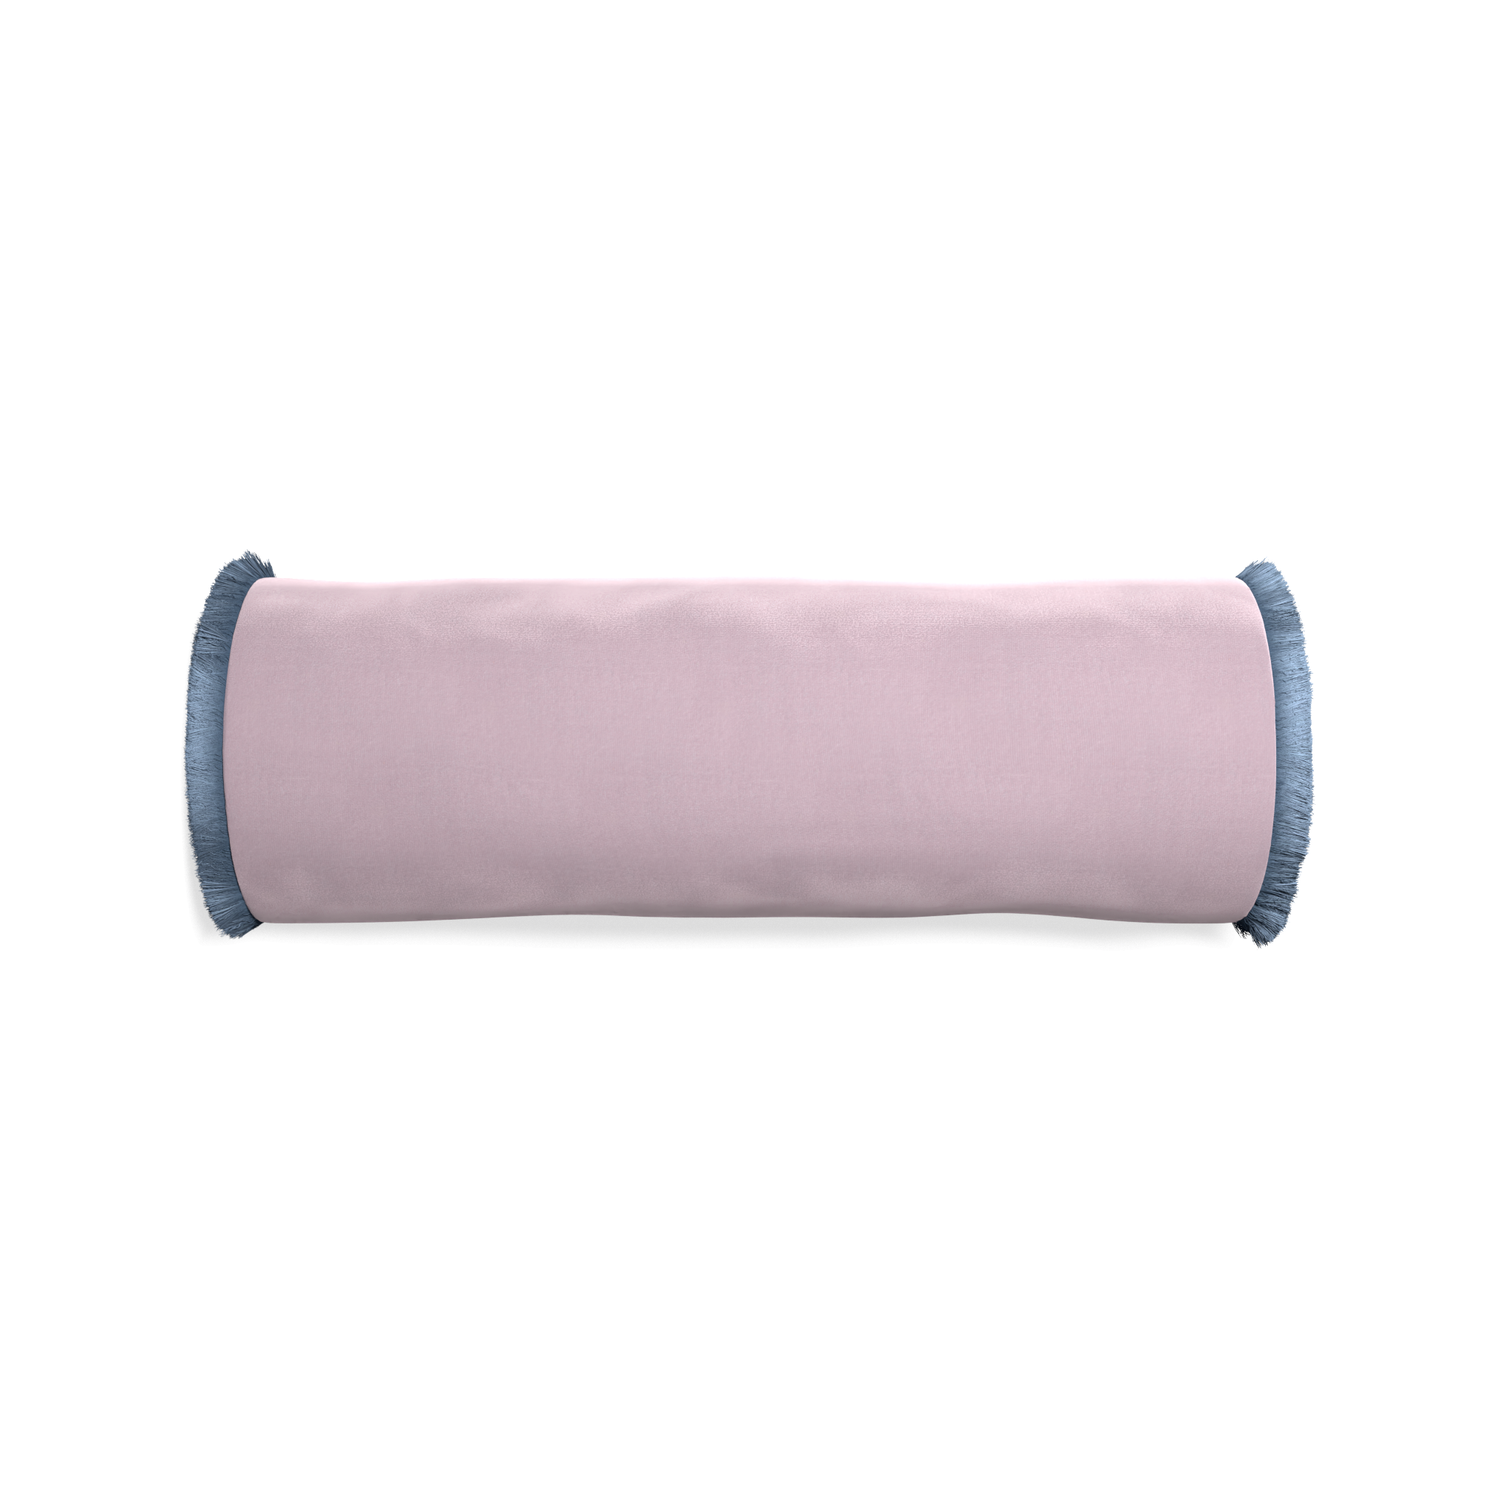 bolster lilac velvet pillow with sky blue fringe 